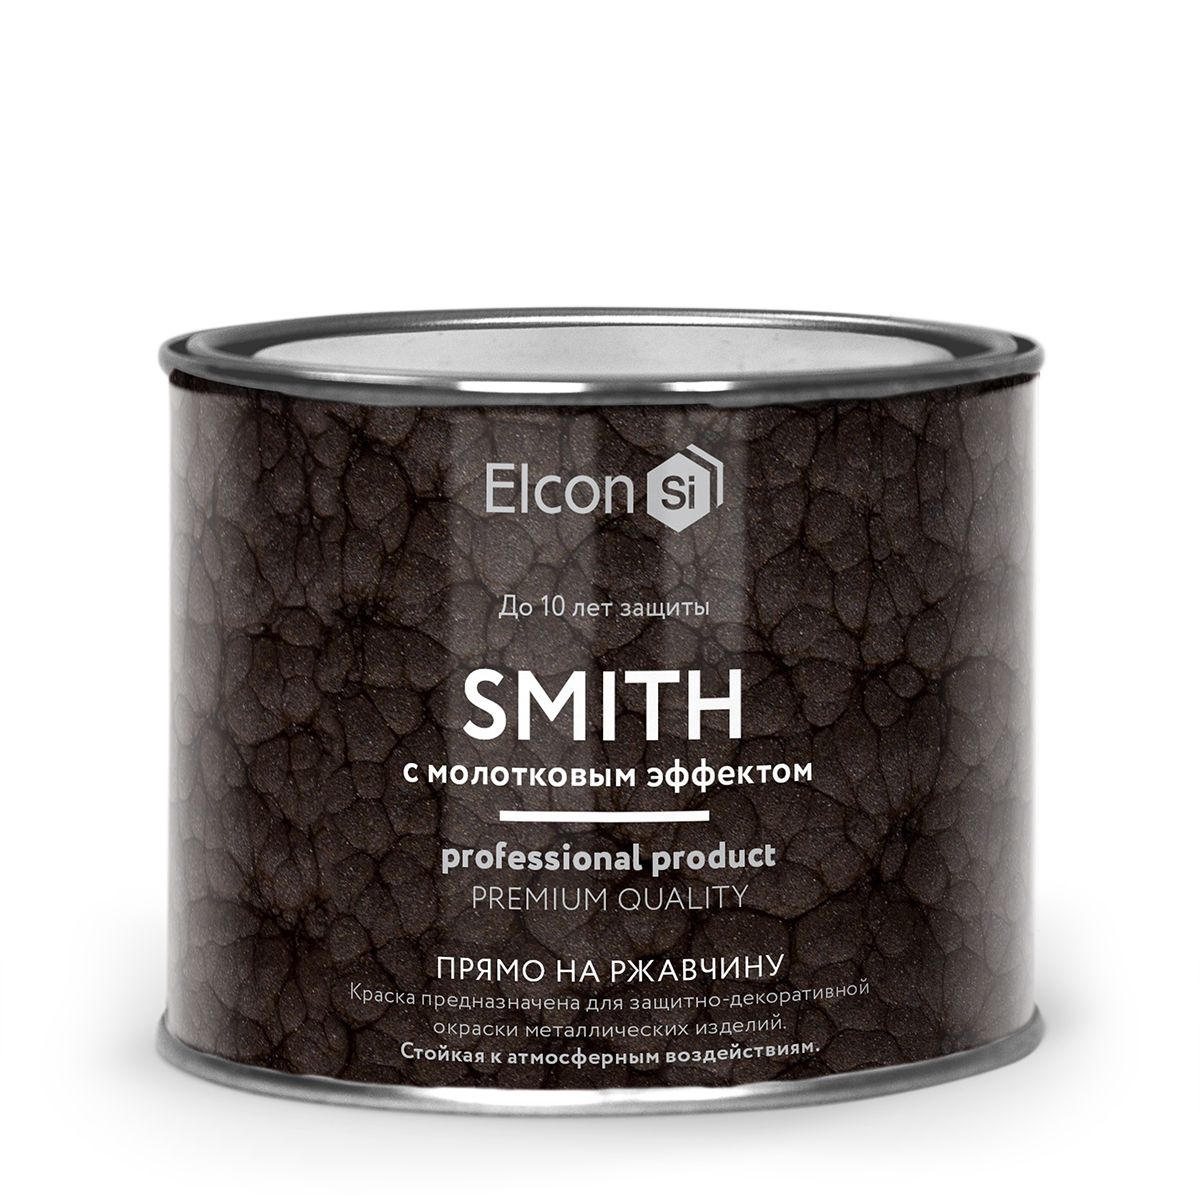 Краска Elcon Smith кузнечная, с молотковым эффектом, серебро, 400 г кошелек с голографическим эффектом серебро